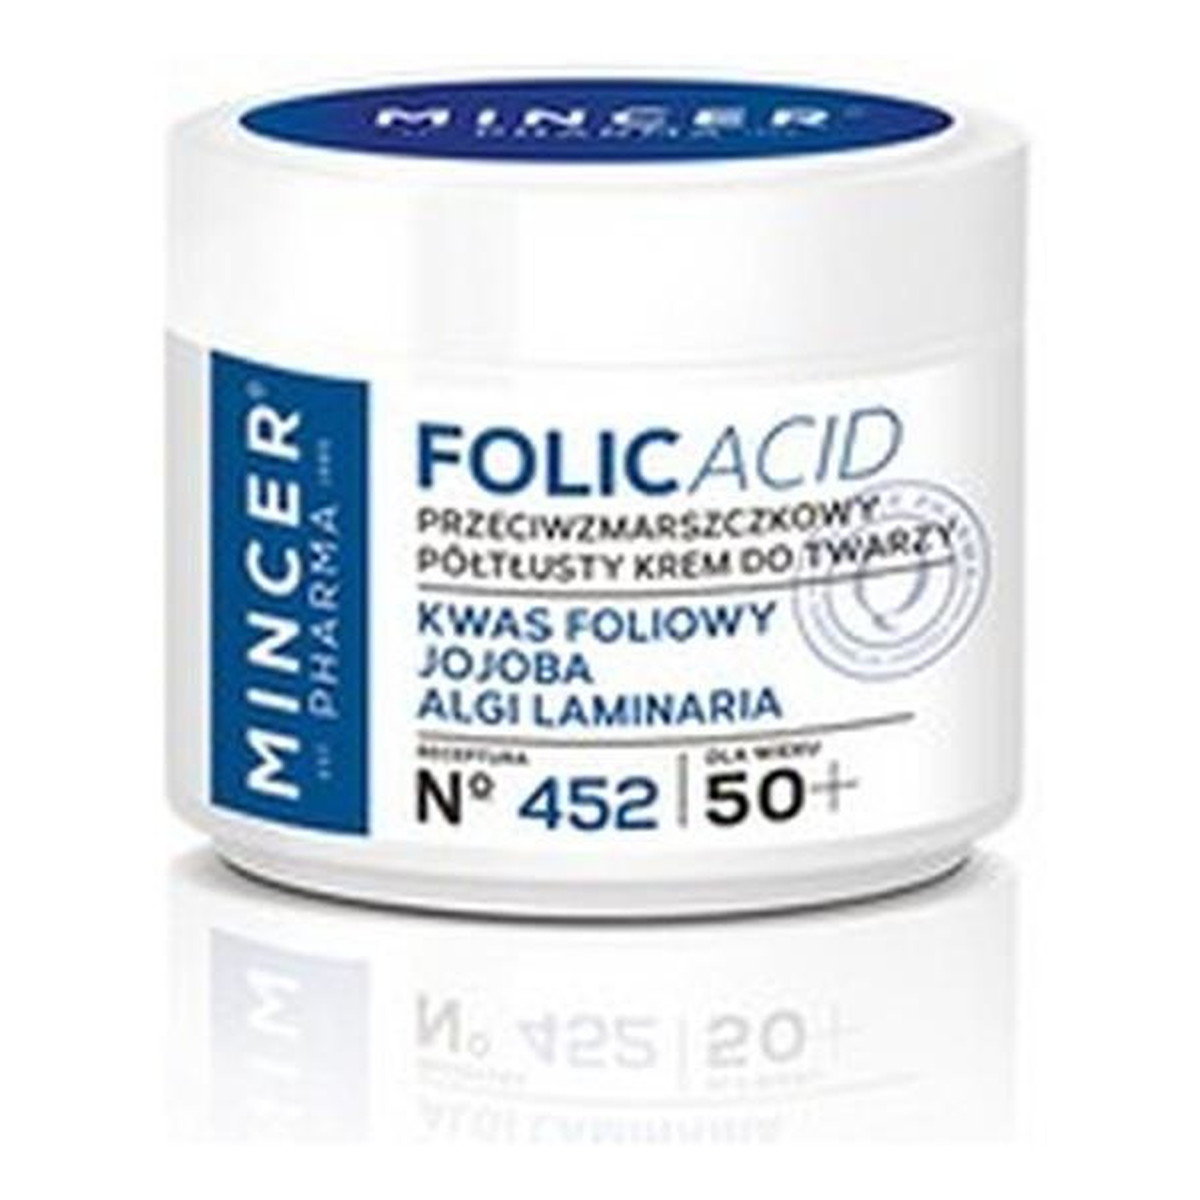 Mincer Pharma Folic Acid 50+ Przeciwzmarszczkowy Krem Do Twarzy No452 50ml